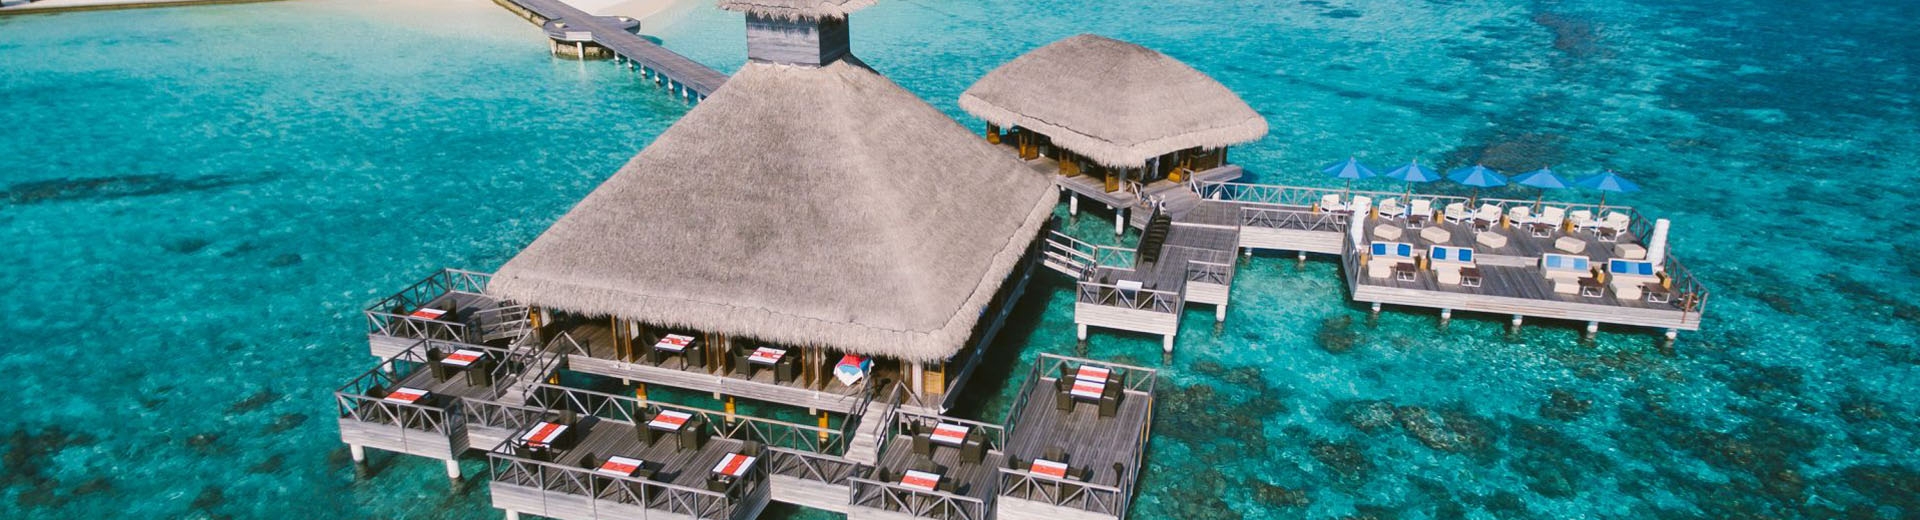 馬爾地夫旅遊飯店推薦-胡瓦芬島